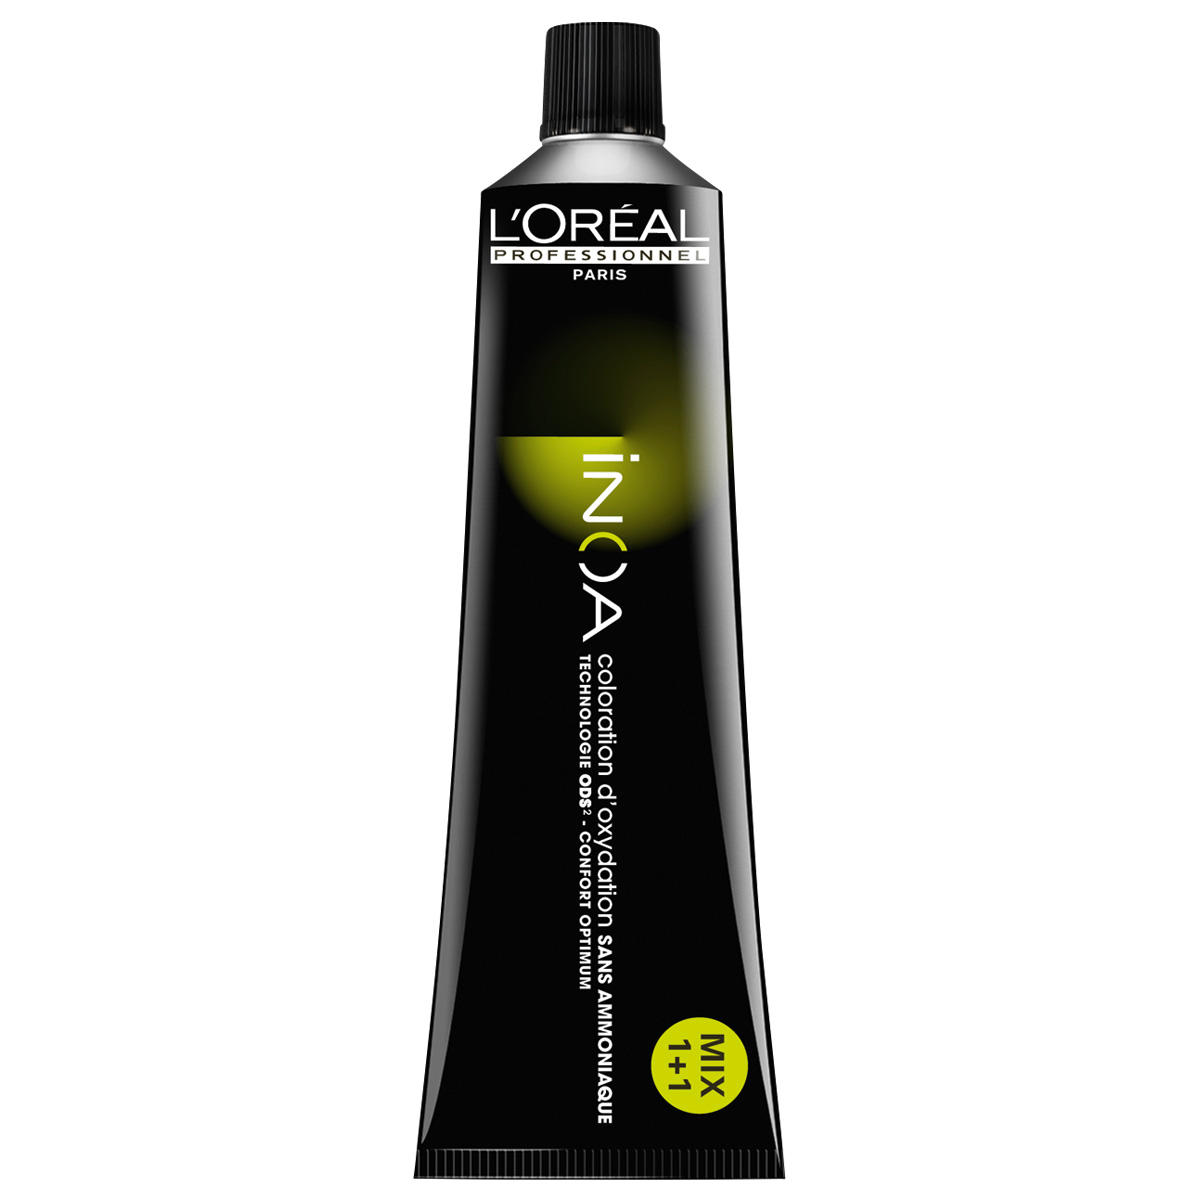 L'Oréal Professionnel Paris Coloration 7.0 Biondo Medio Intensivo, Tubo 60 ml